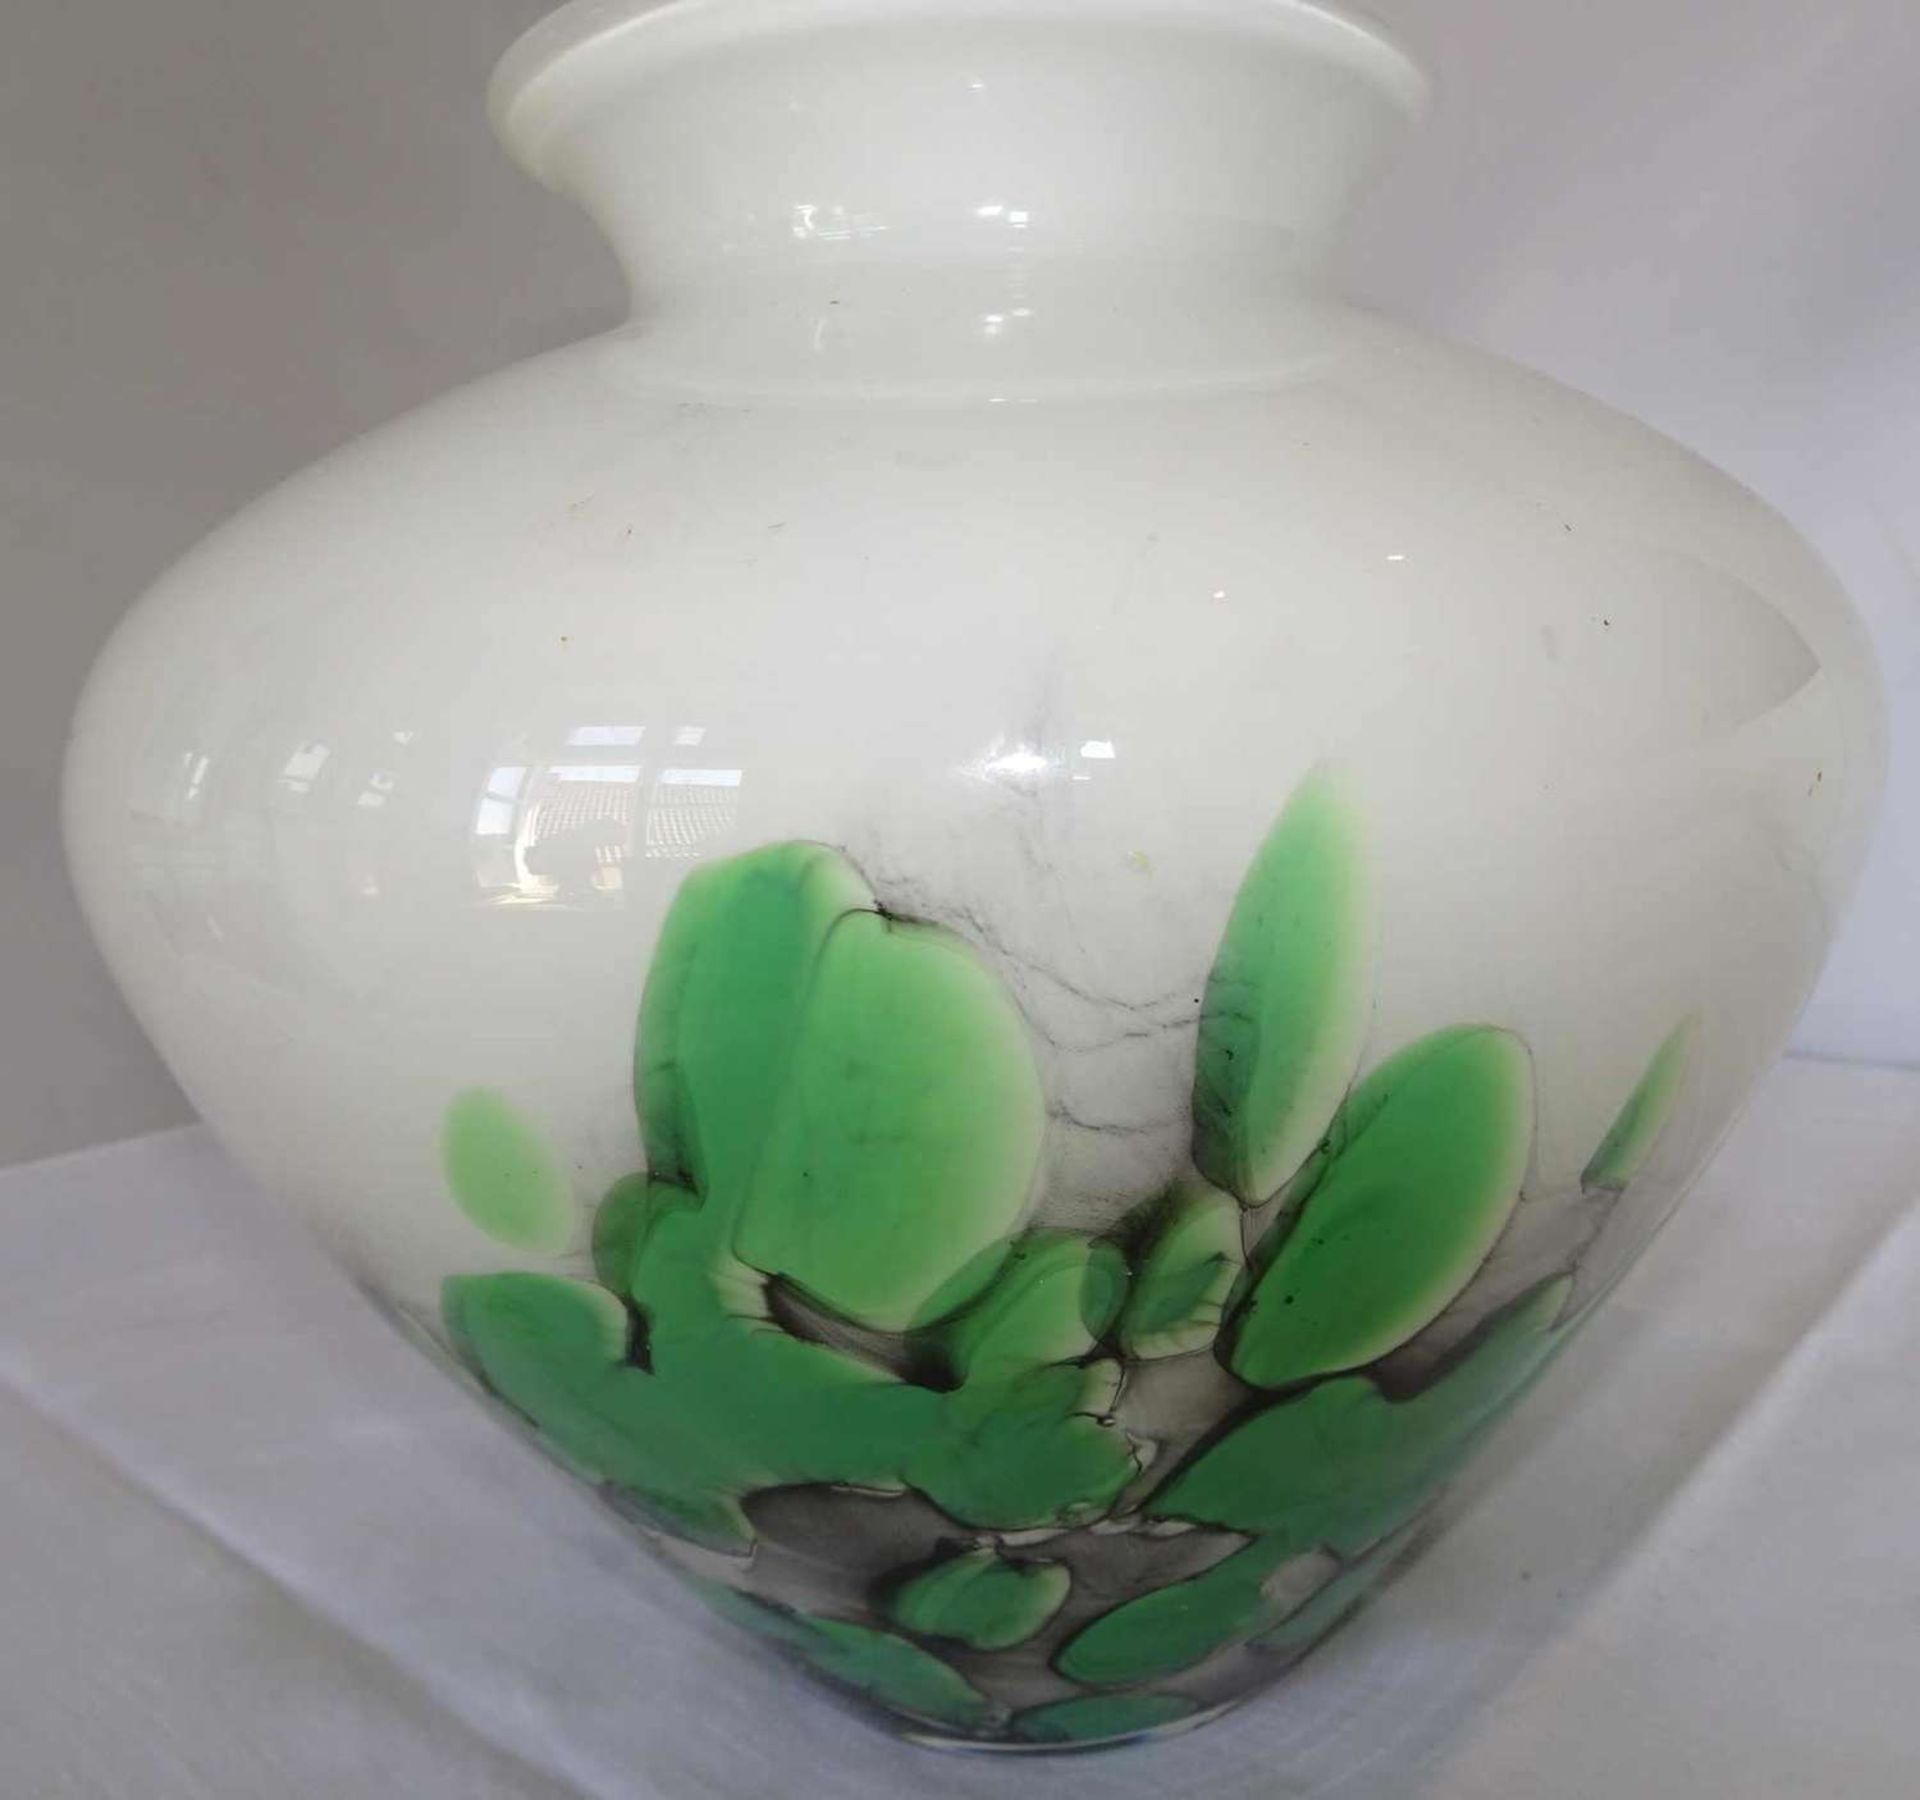 1 Murano Glasvase, weißes Milchglas mit grün/schwarzen Einschmelzungen. Höhe ca. 21 cm. - Bild 3 aus 3